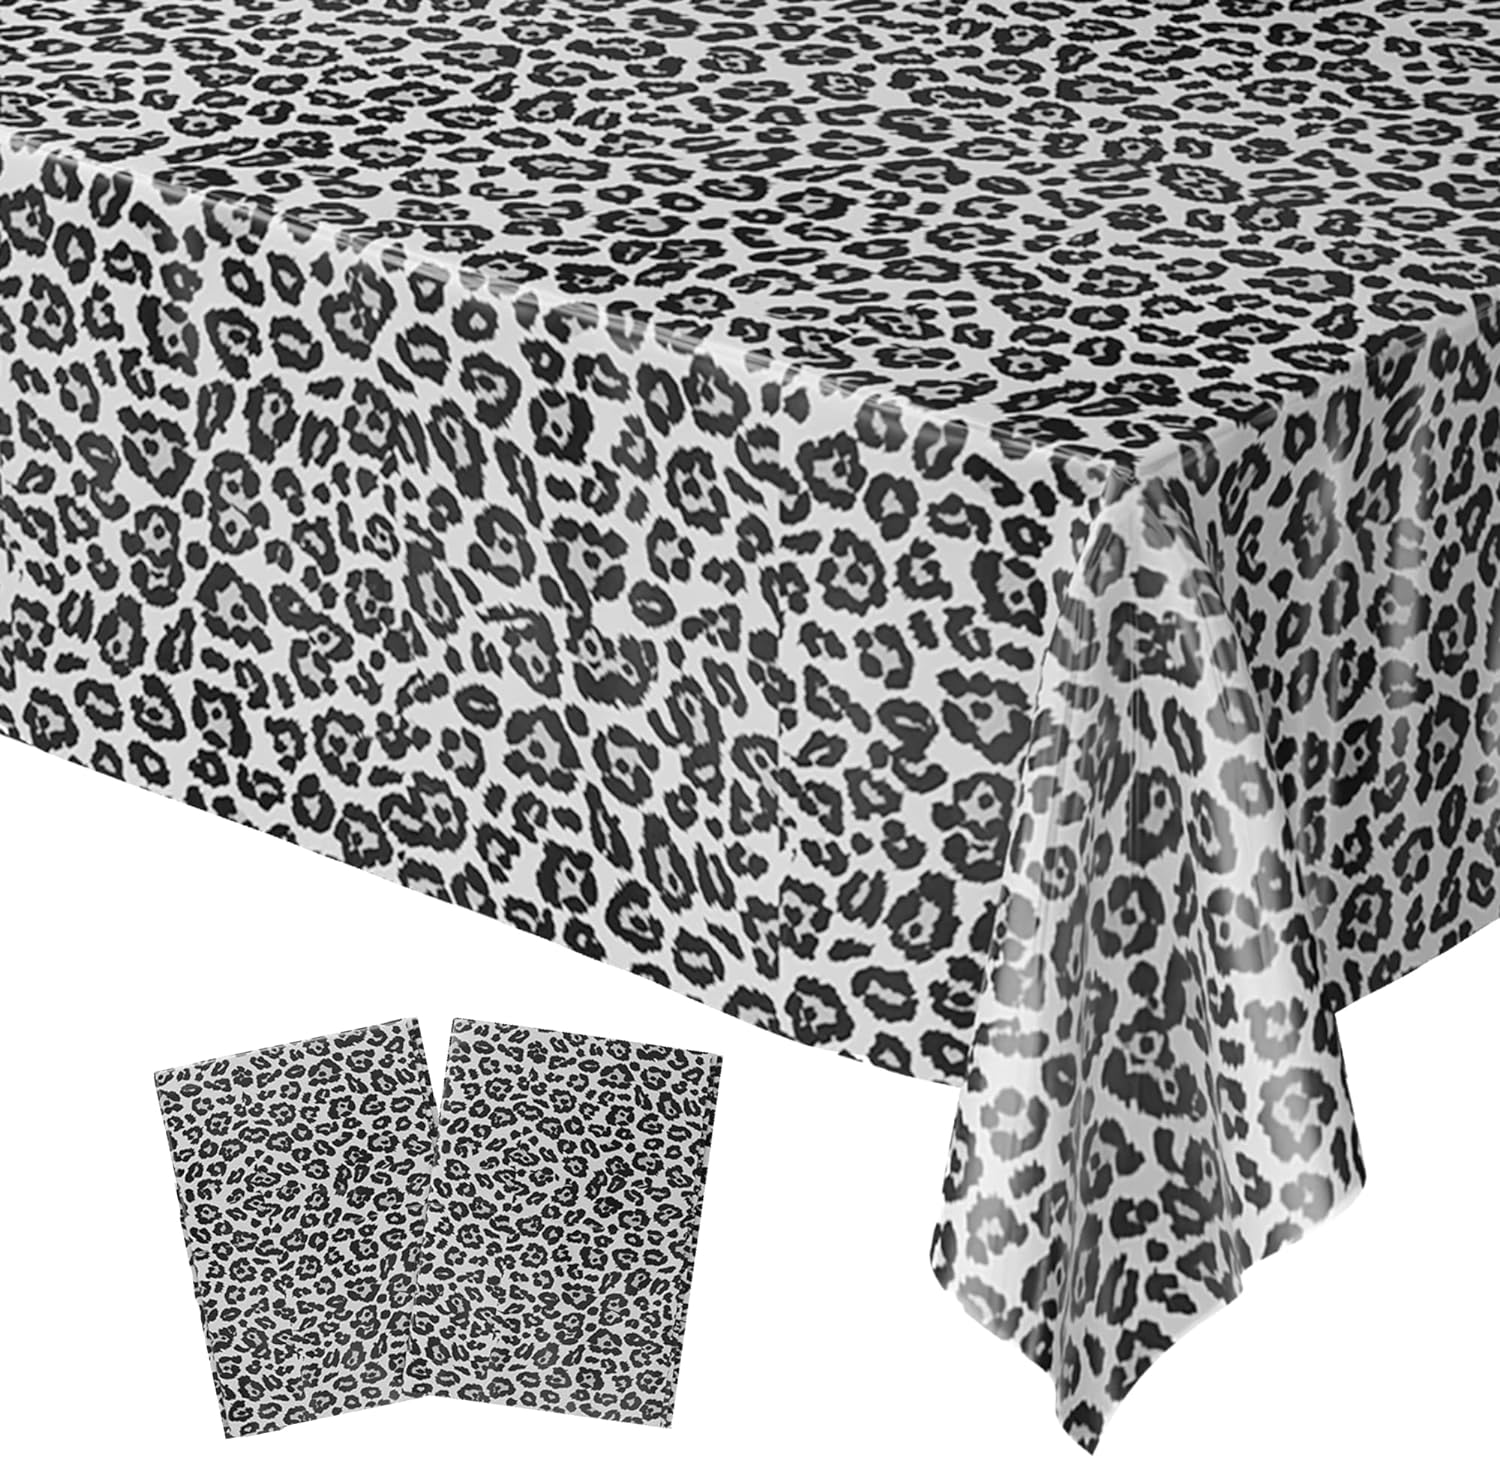 snow leopard pattern